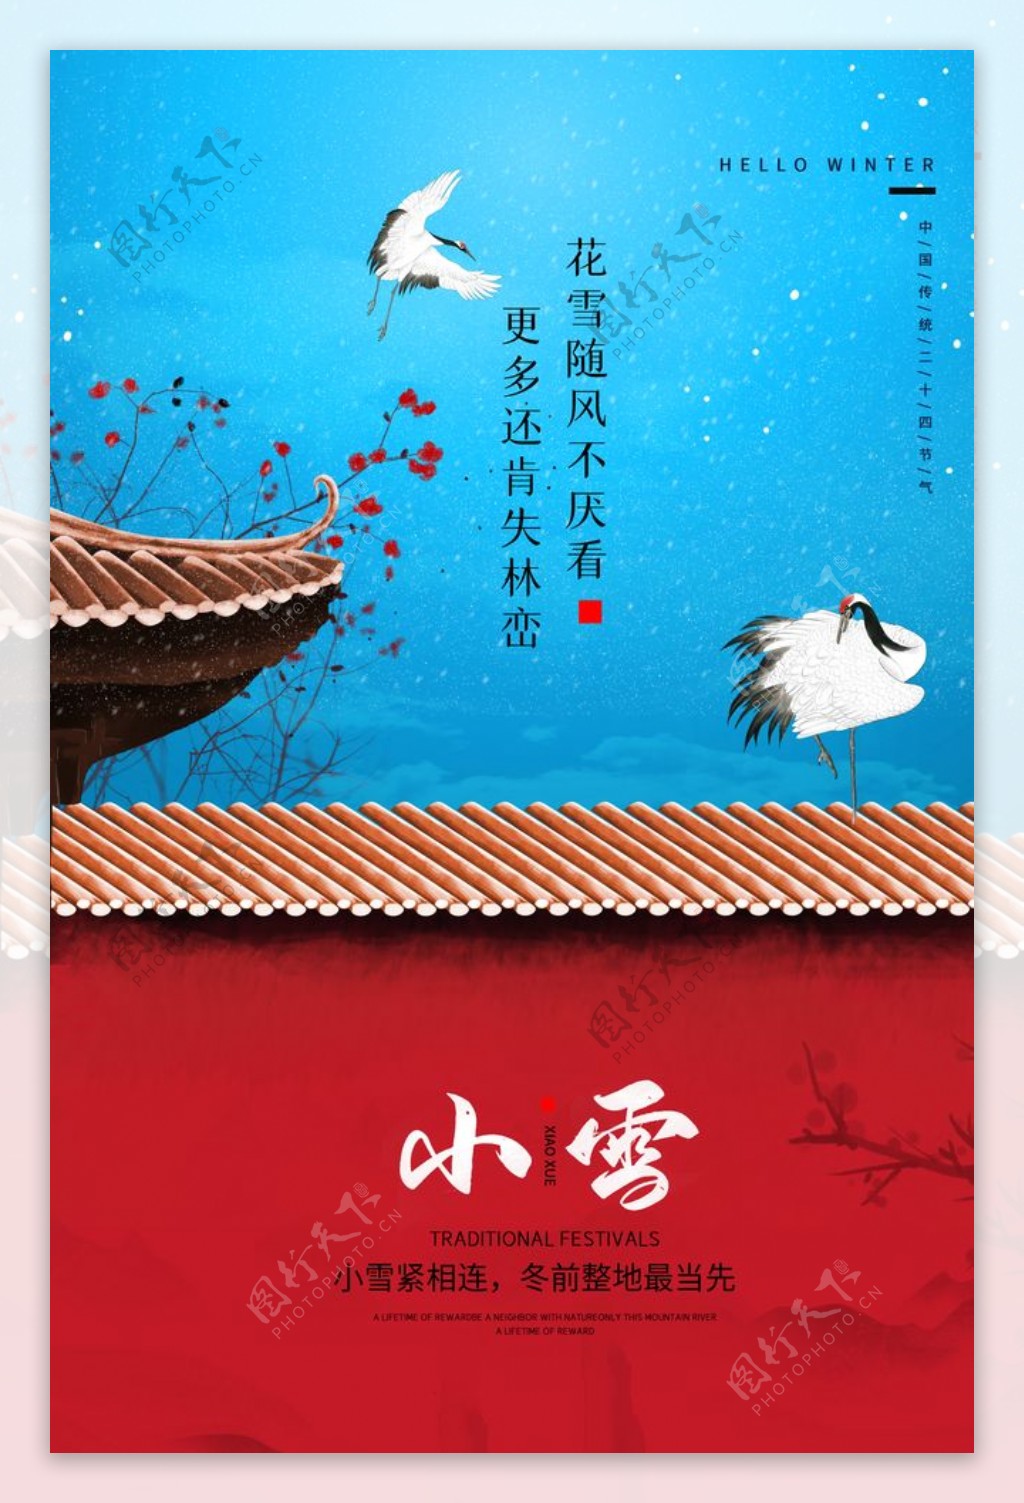 小雪传统节日活动宣传海报素材图片